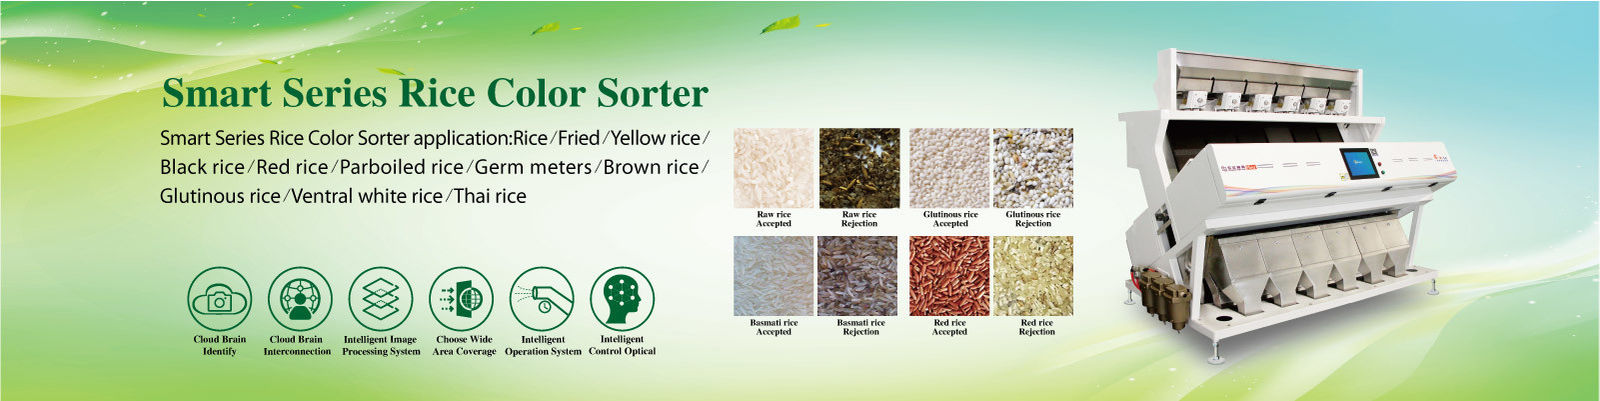 classificador de cores de arroz